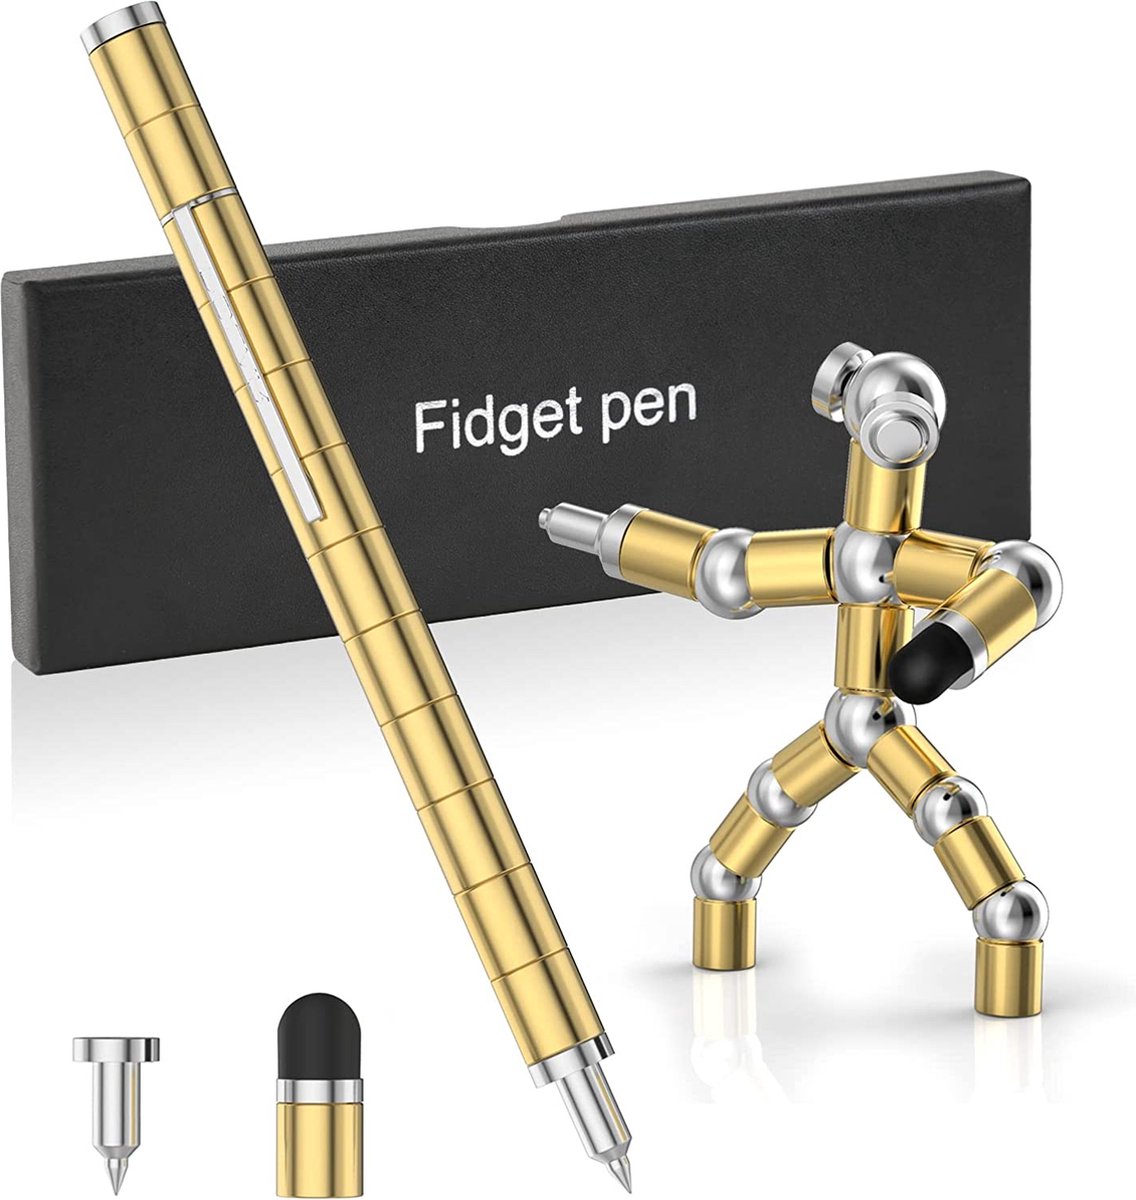 Magnetische Pen Fidget kado idee voor je collega